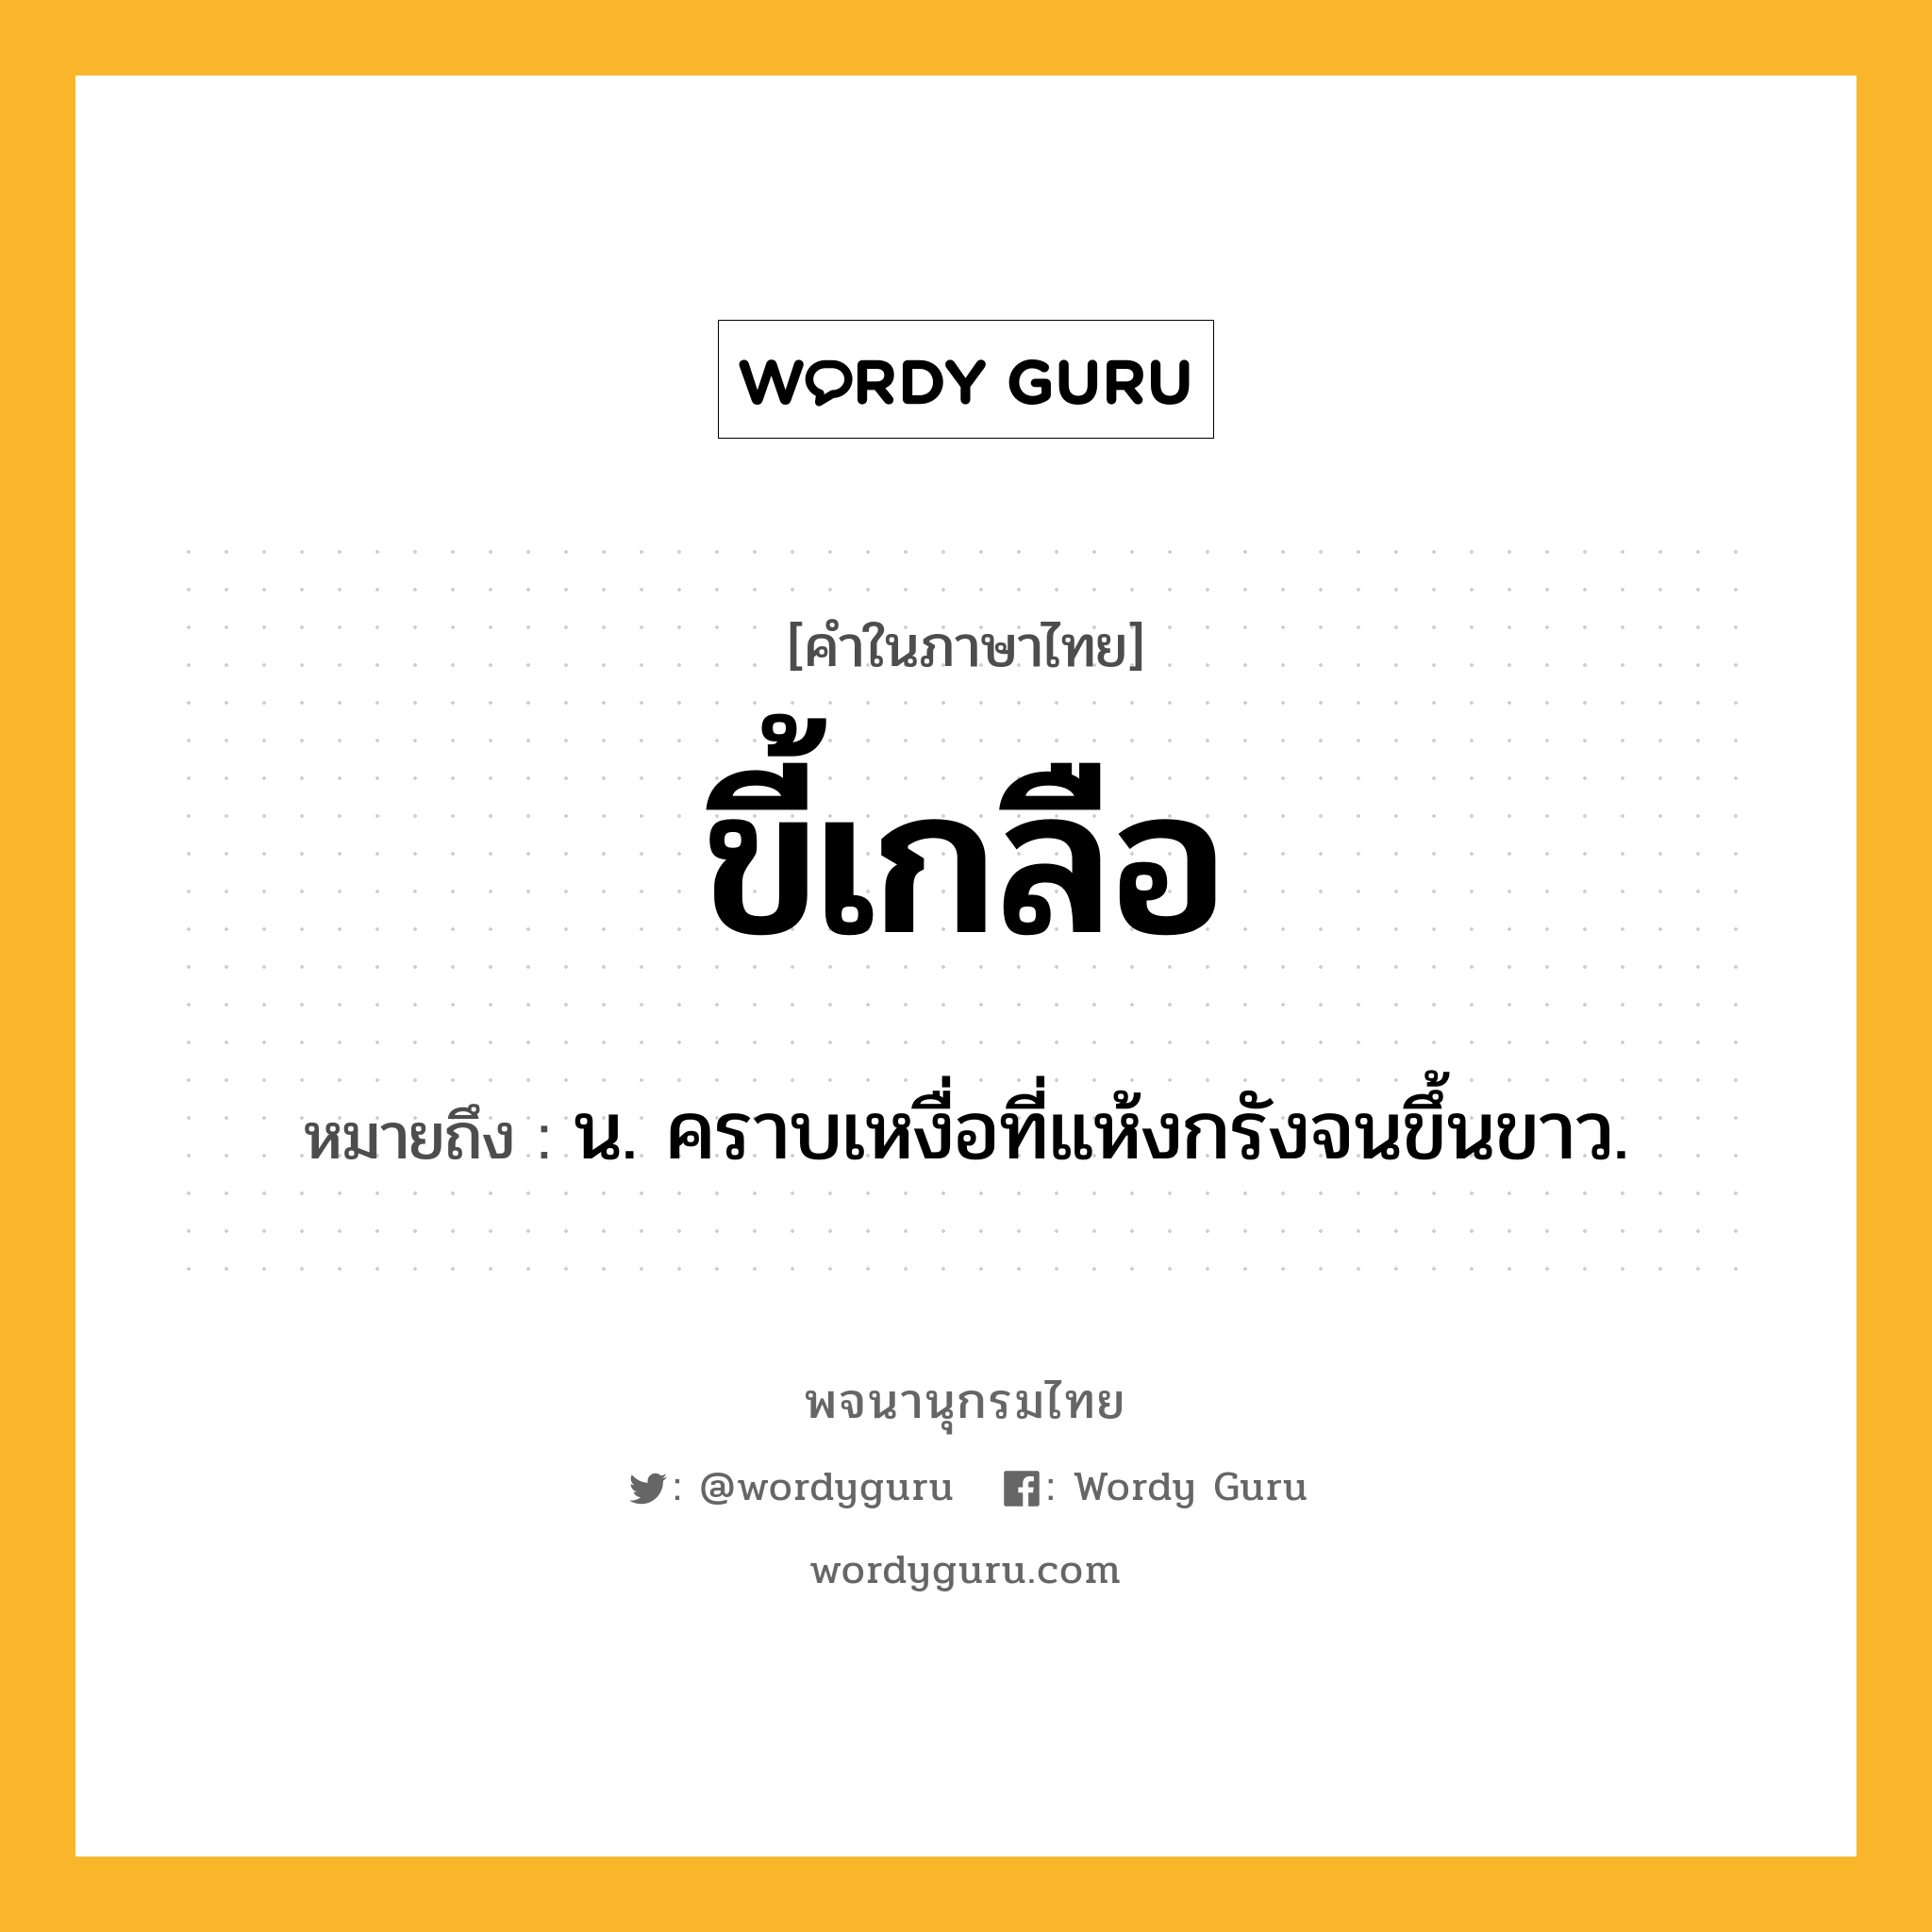 ขี้เกลือ หมายถึงอะไร?, คำในภาษาไทย ขี้เกลือ หมายถึง น. คราบเหงื่อที่แห้งกรังจนขึ้นขาว.